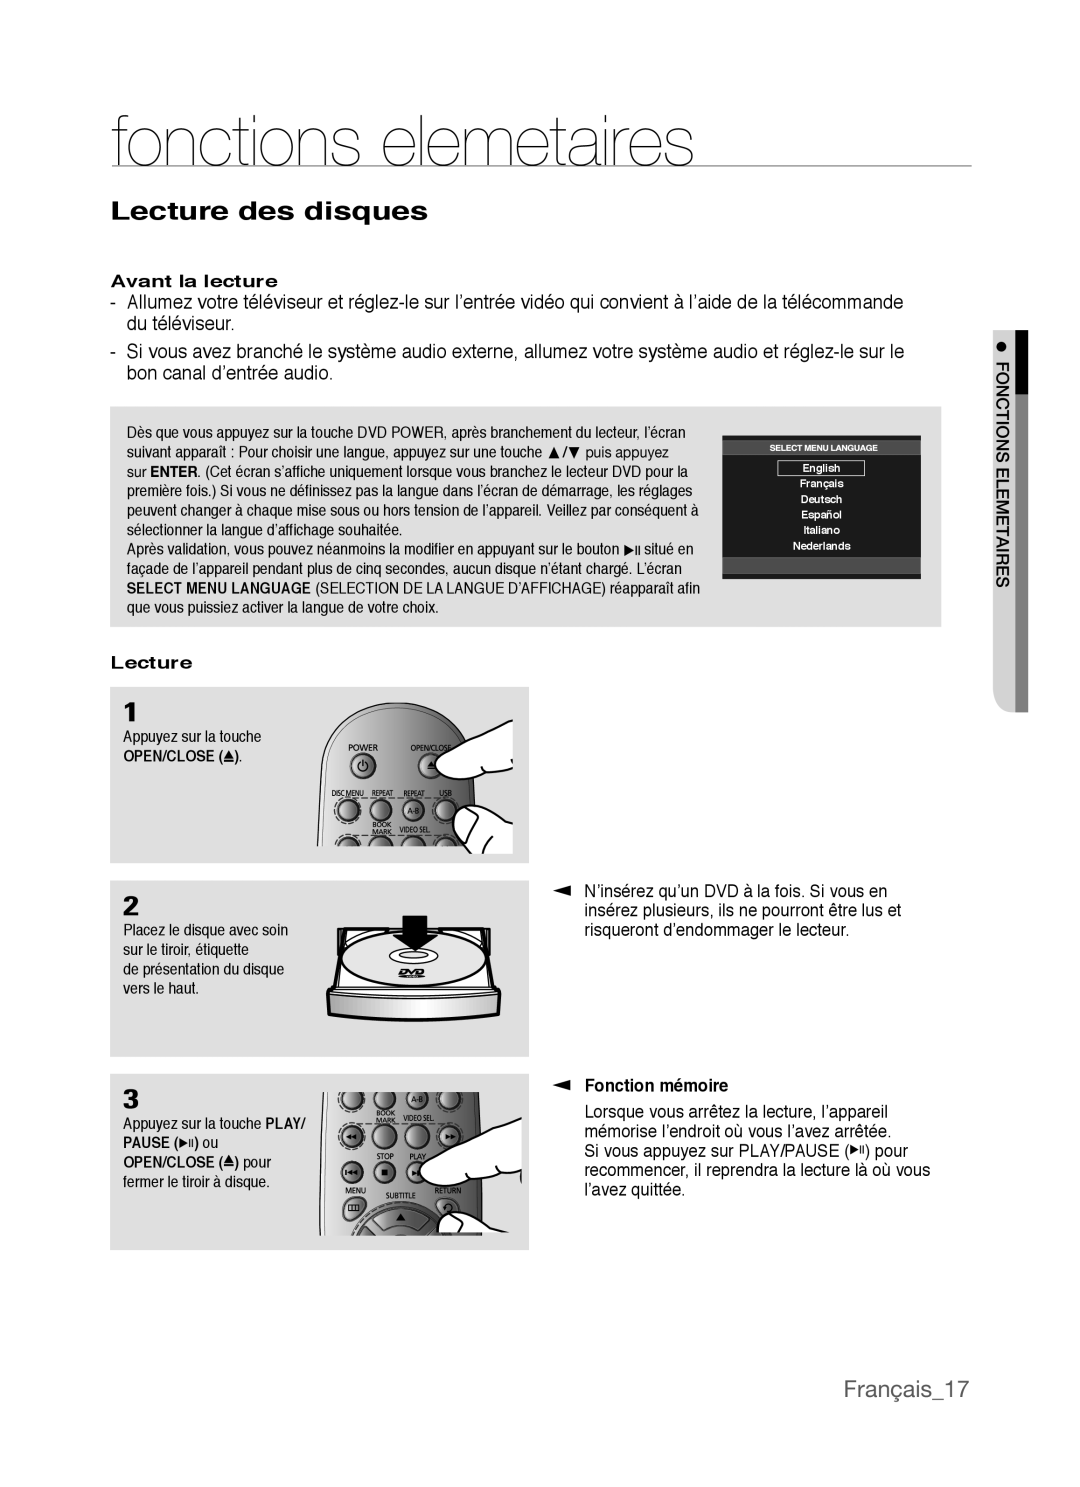 Samsung AK68-01770G, DVD-P390 user manual fonctions elemetaires, Lecture des disques, Français17 